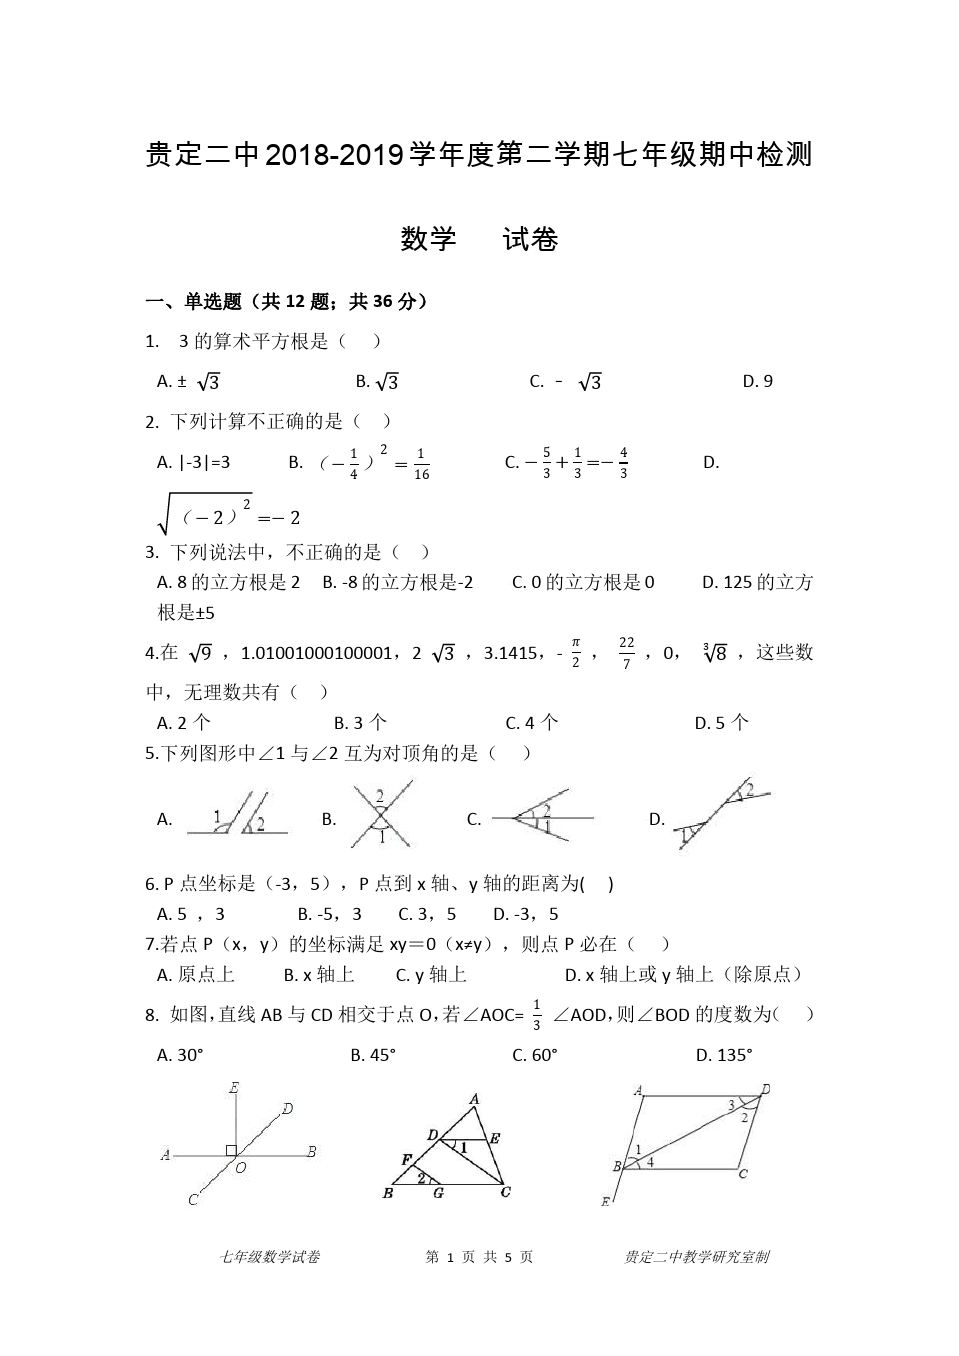 贵州省贵定县二中七年级下册期中考试数学试卷(含答案)